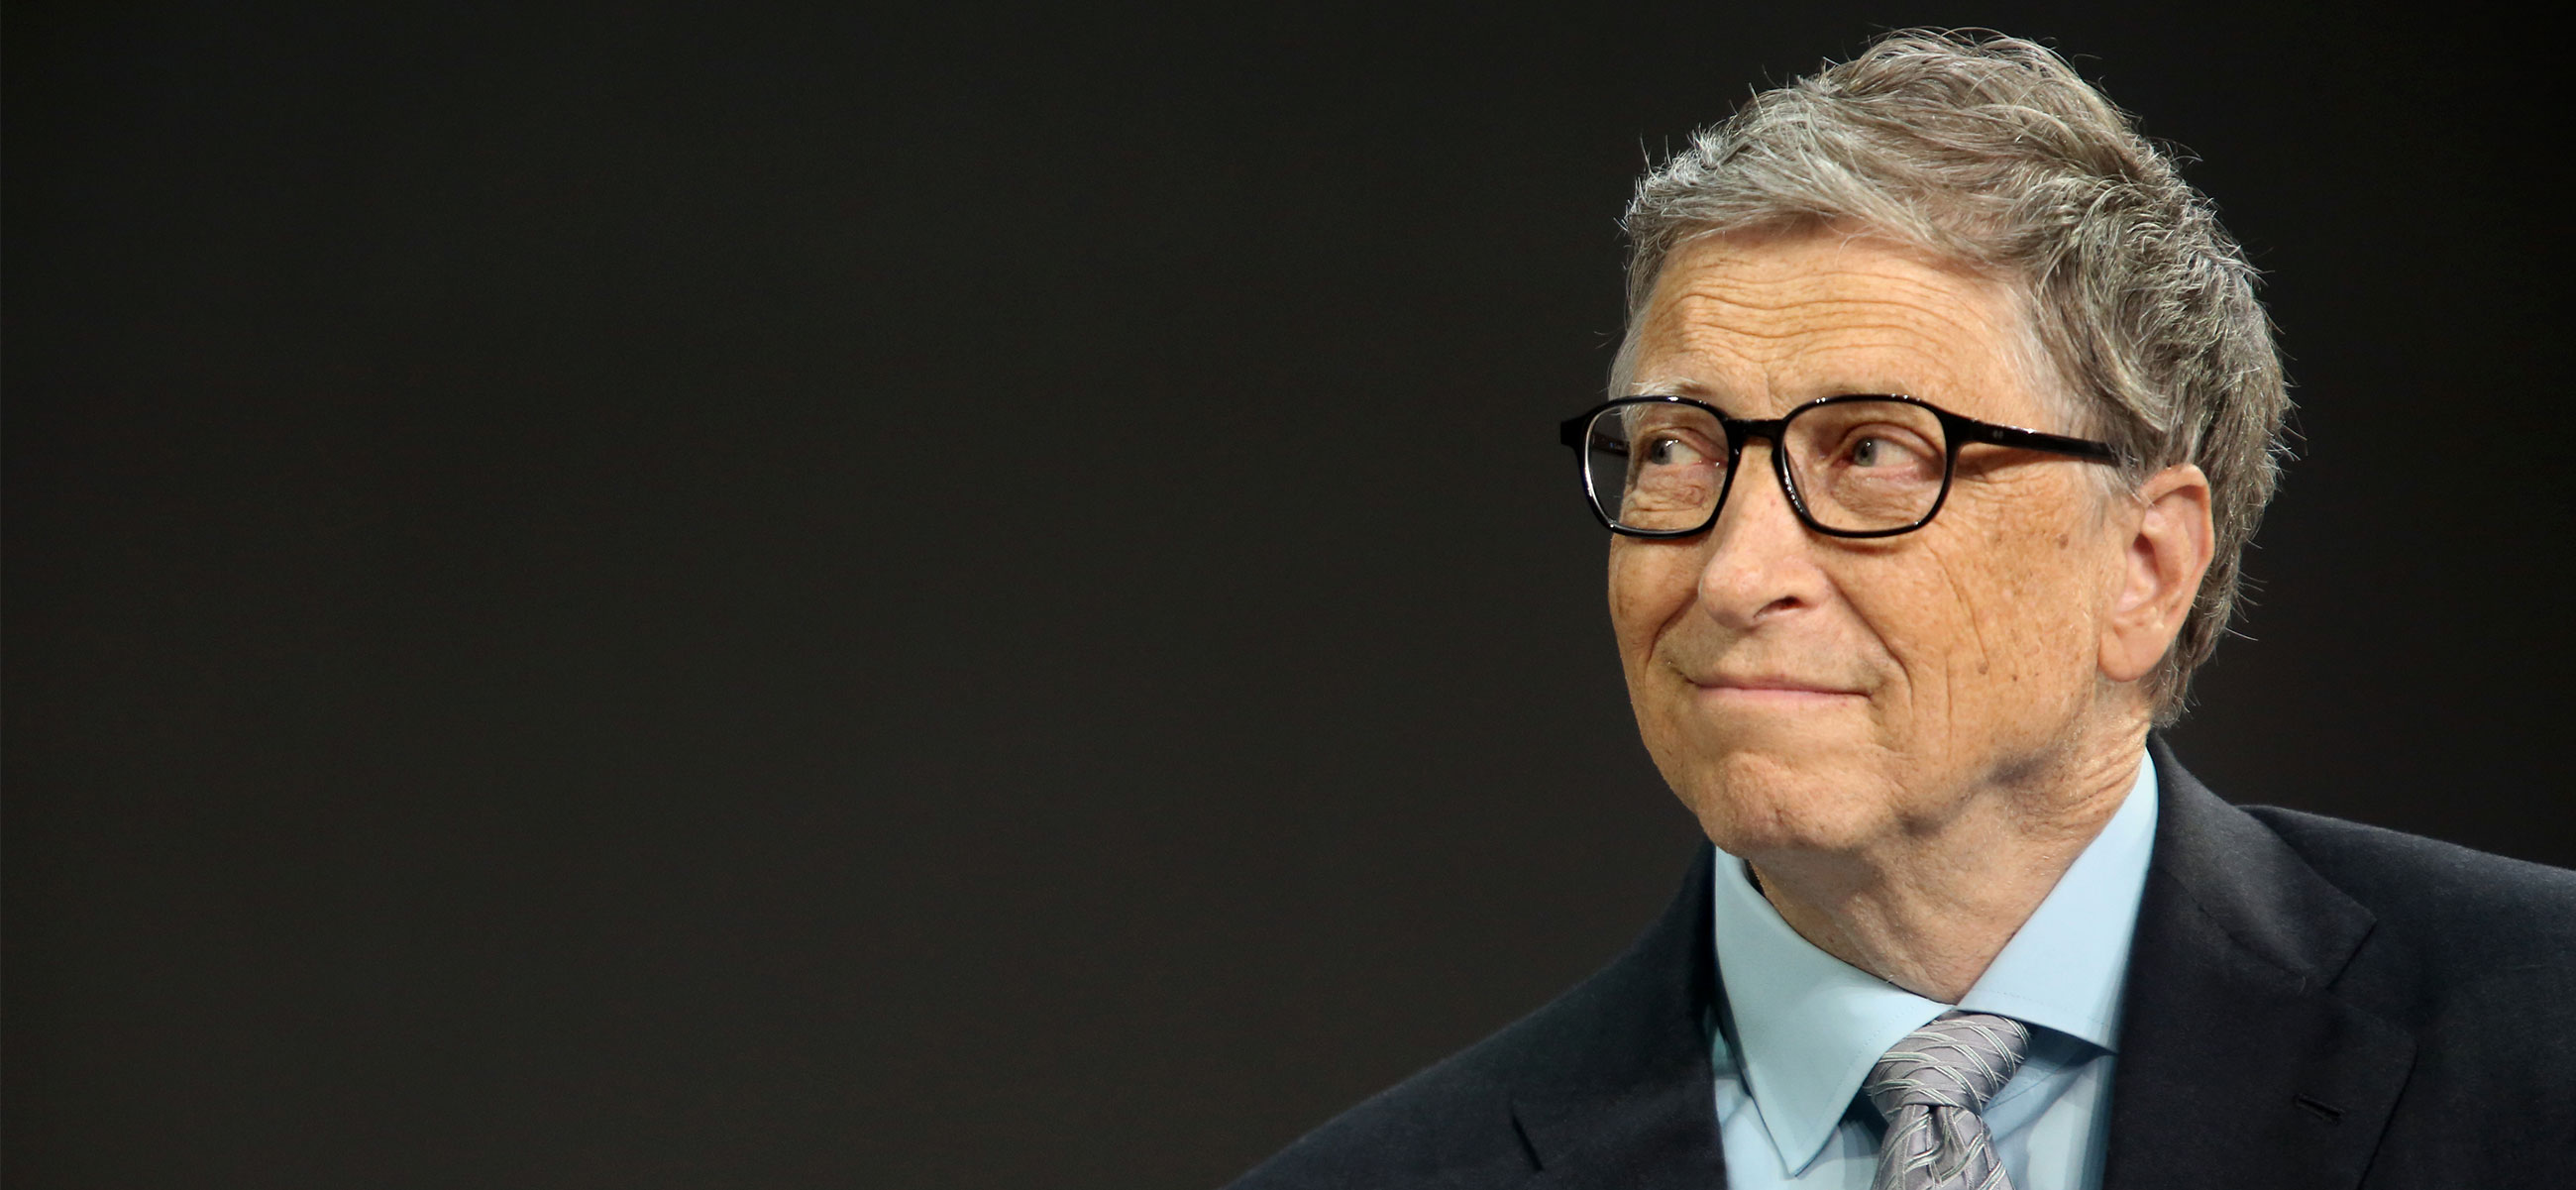 Билл Гейтс выразил надежду на спасение Земли от ужасного исхода в результате изменений климата